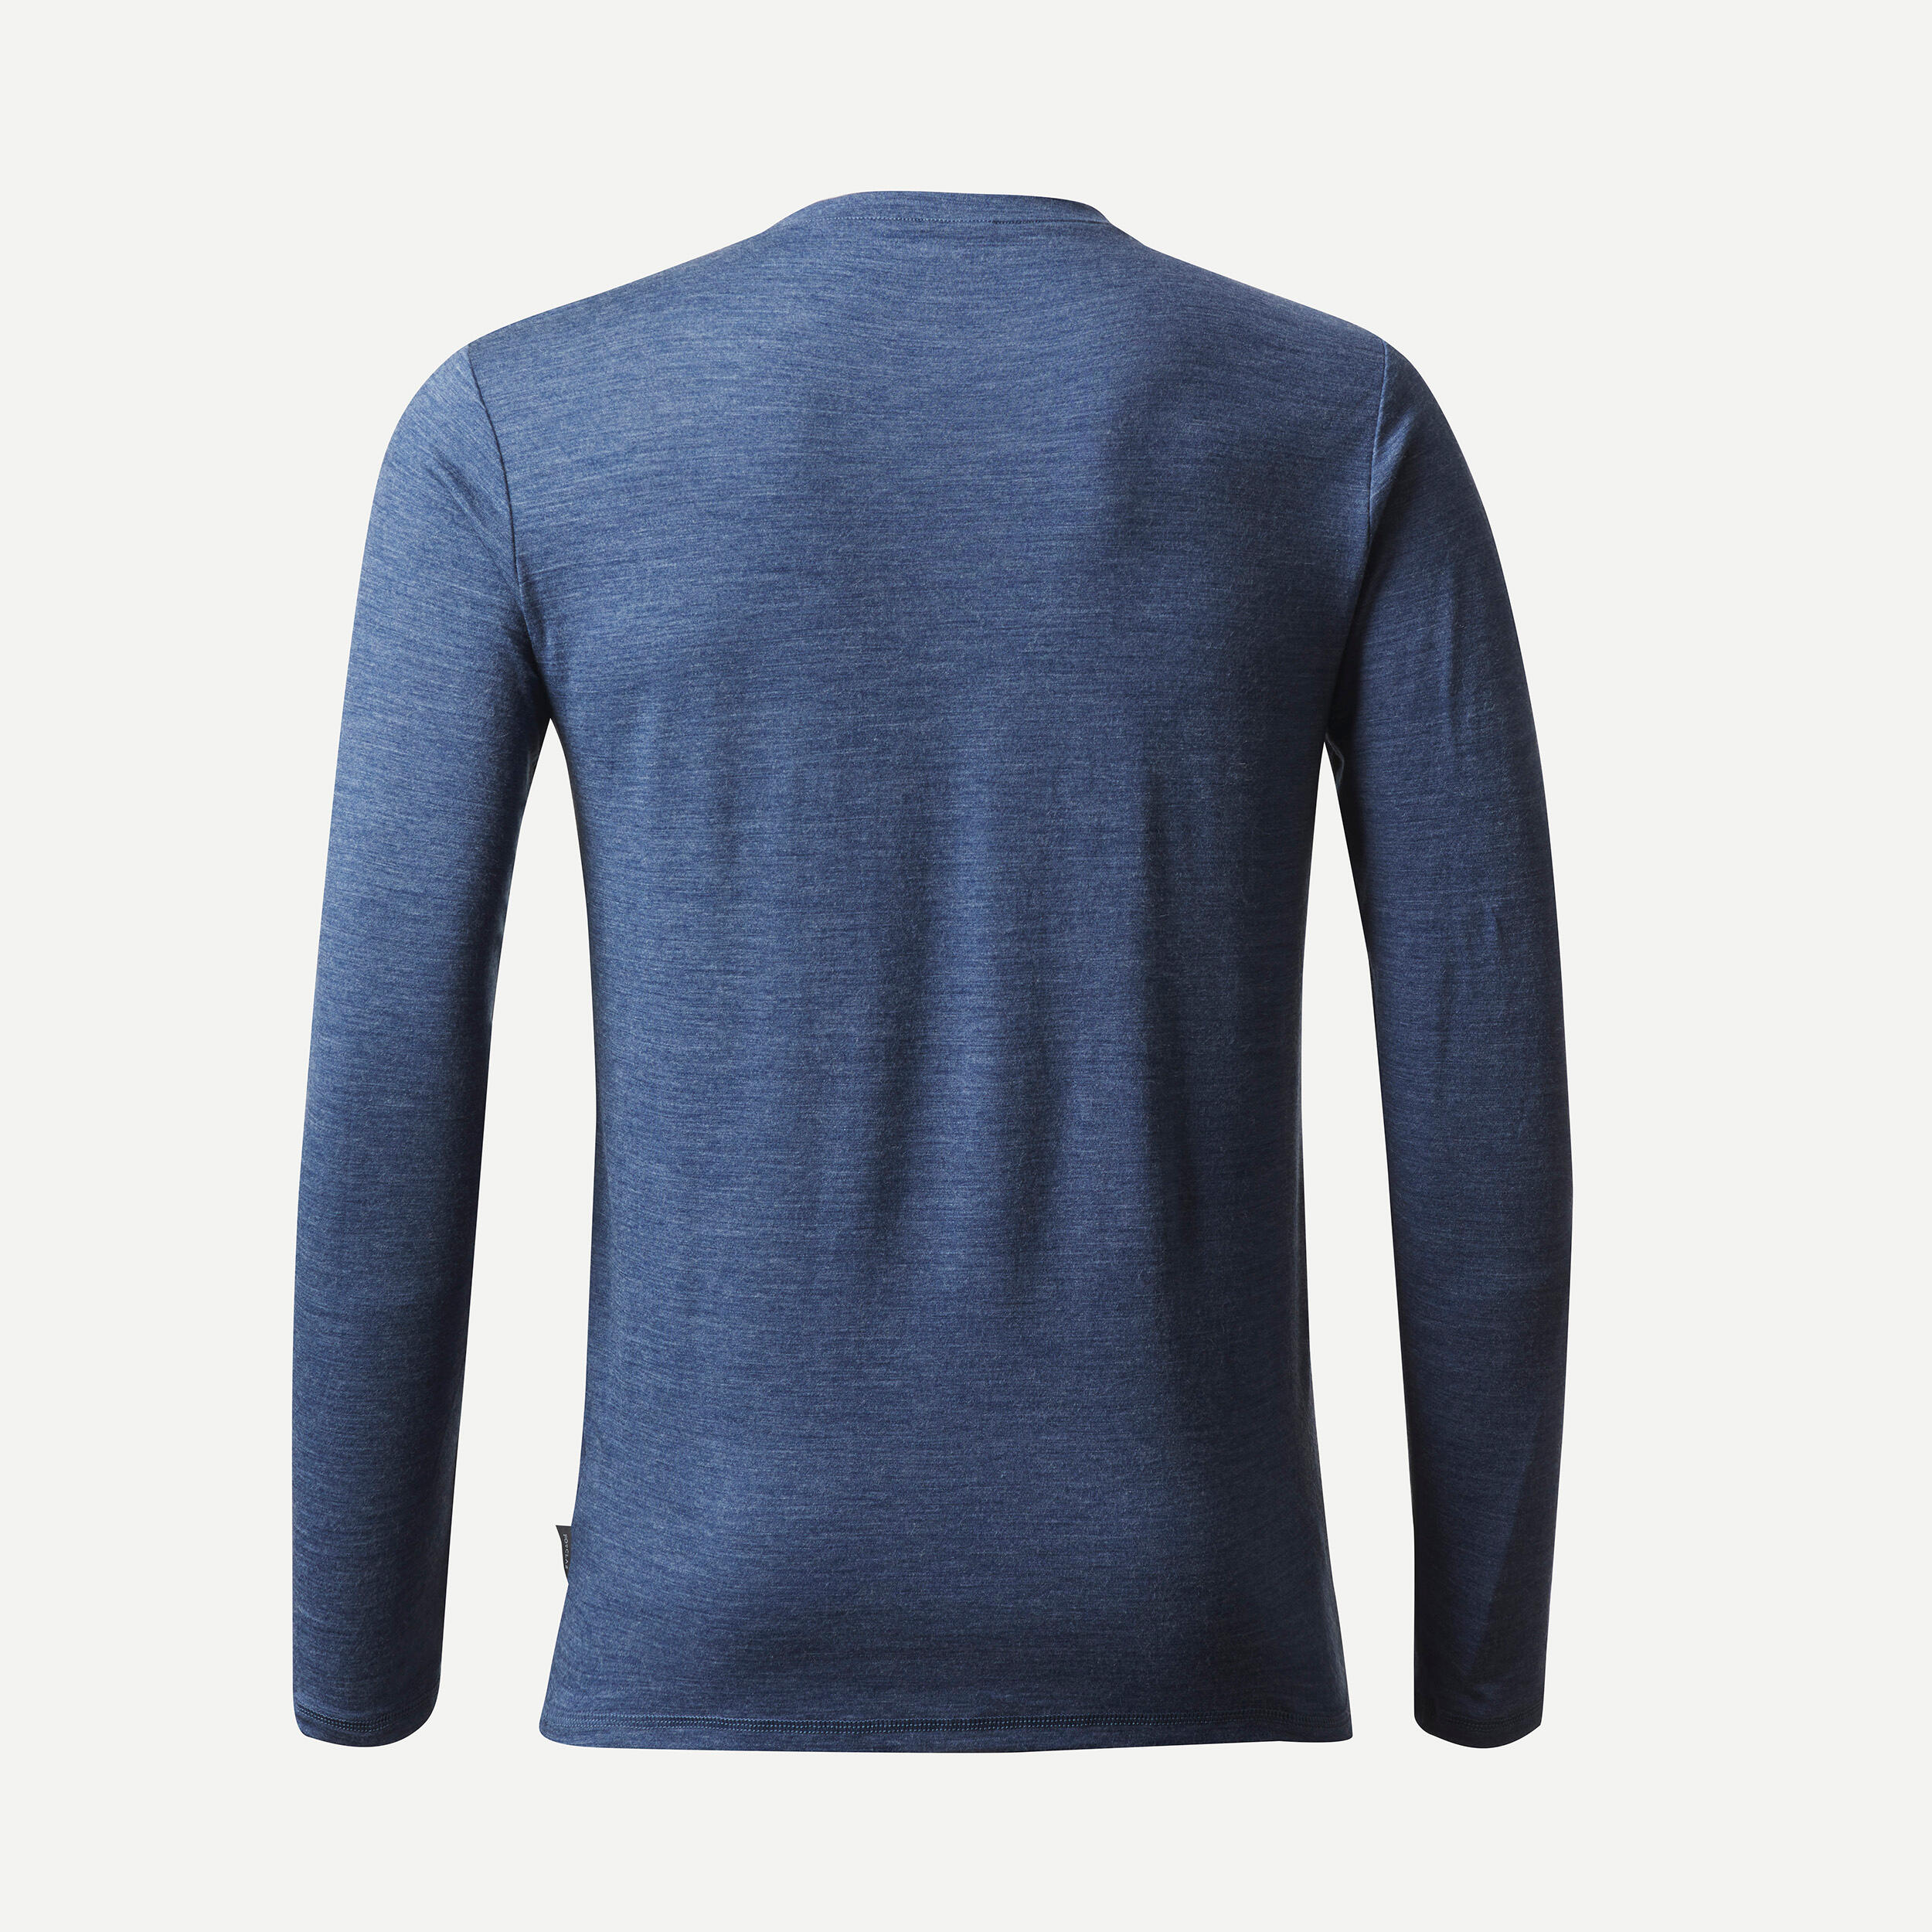 Men's long-sleeved travel trekking Merino wool T-shirt - TRAVEL 500 - blue 6/6